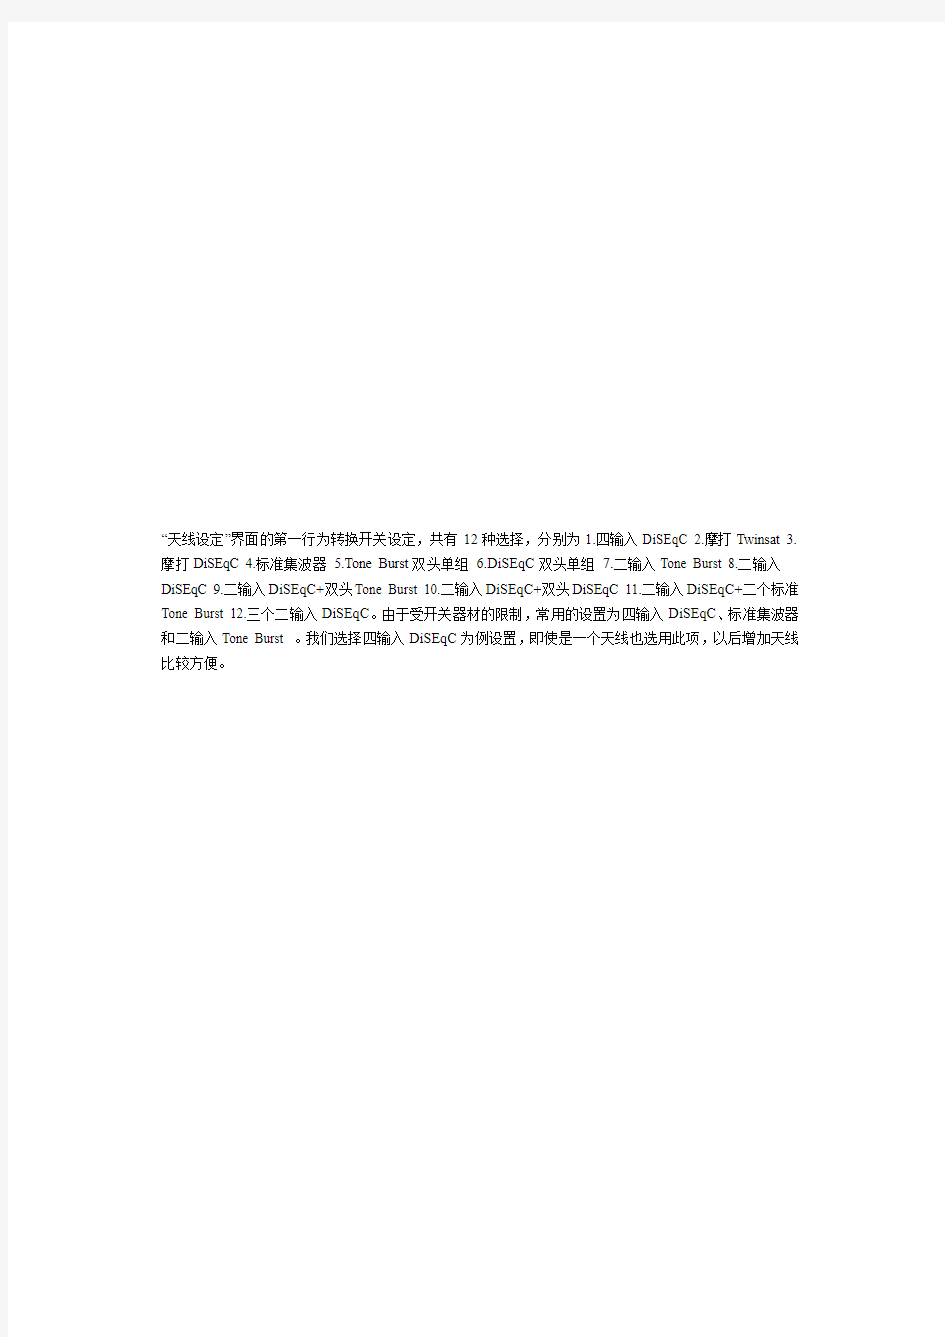 雷霆430卫星电视接收机中文说明书